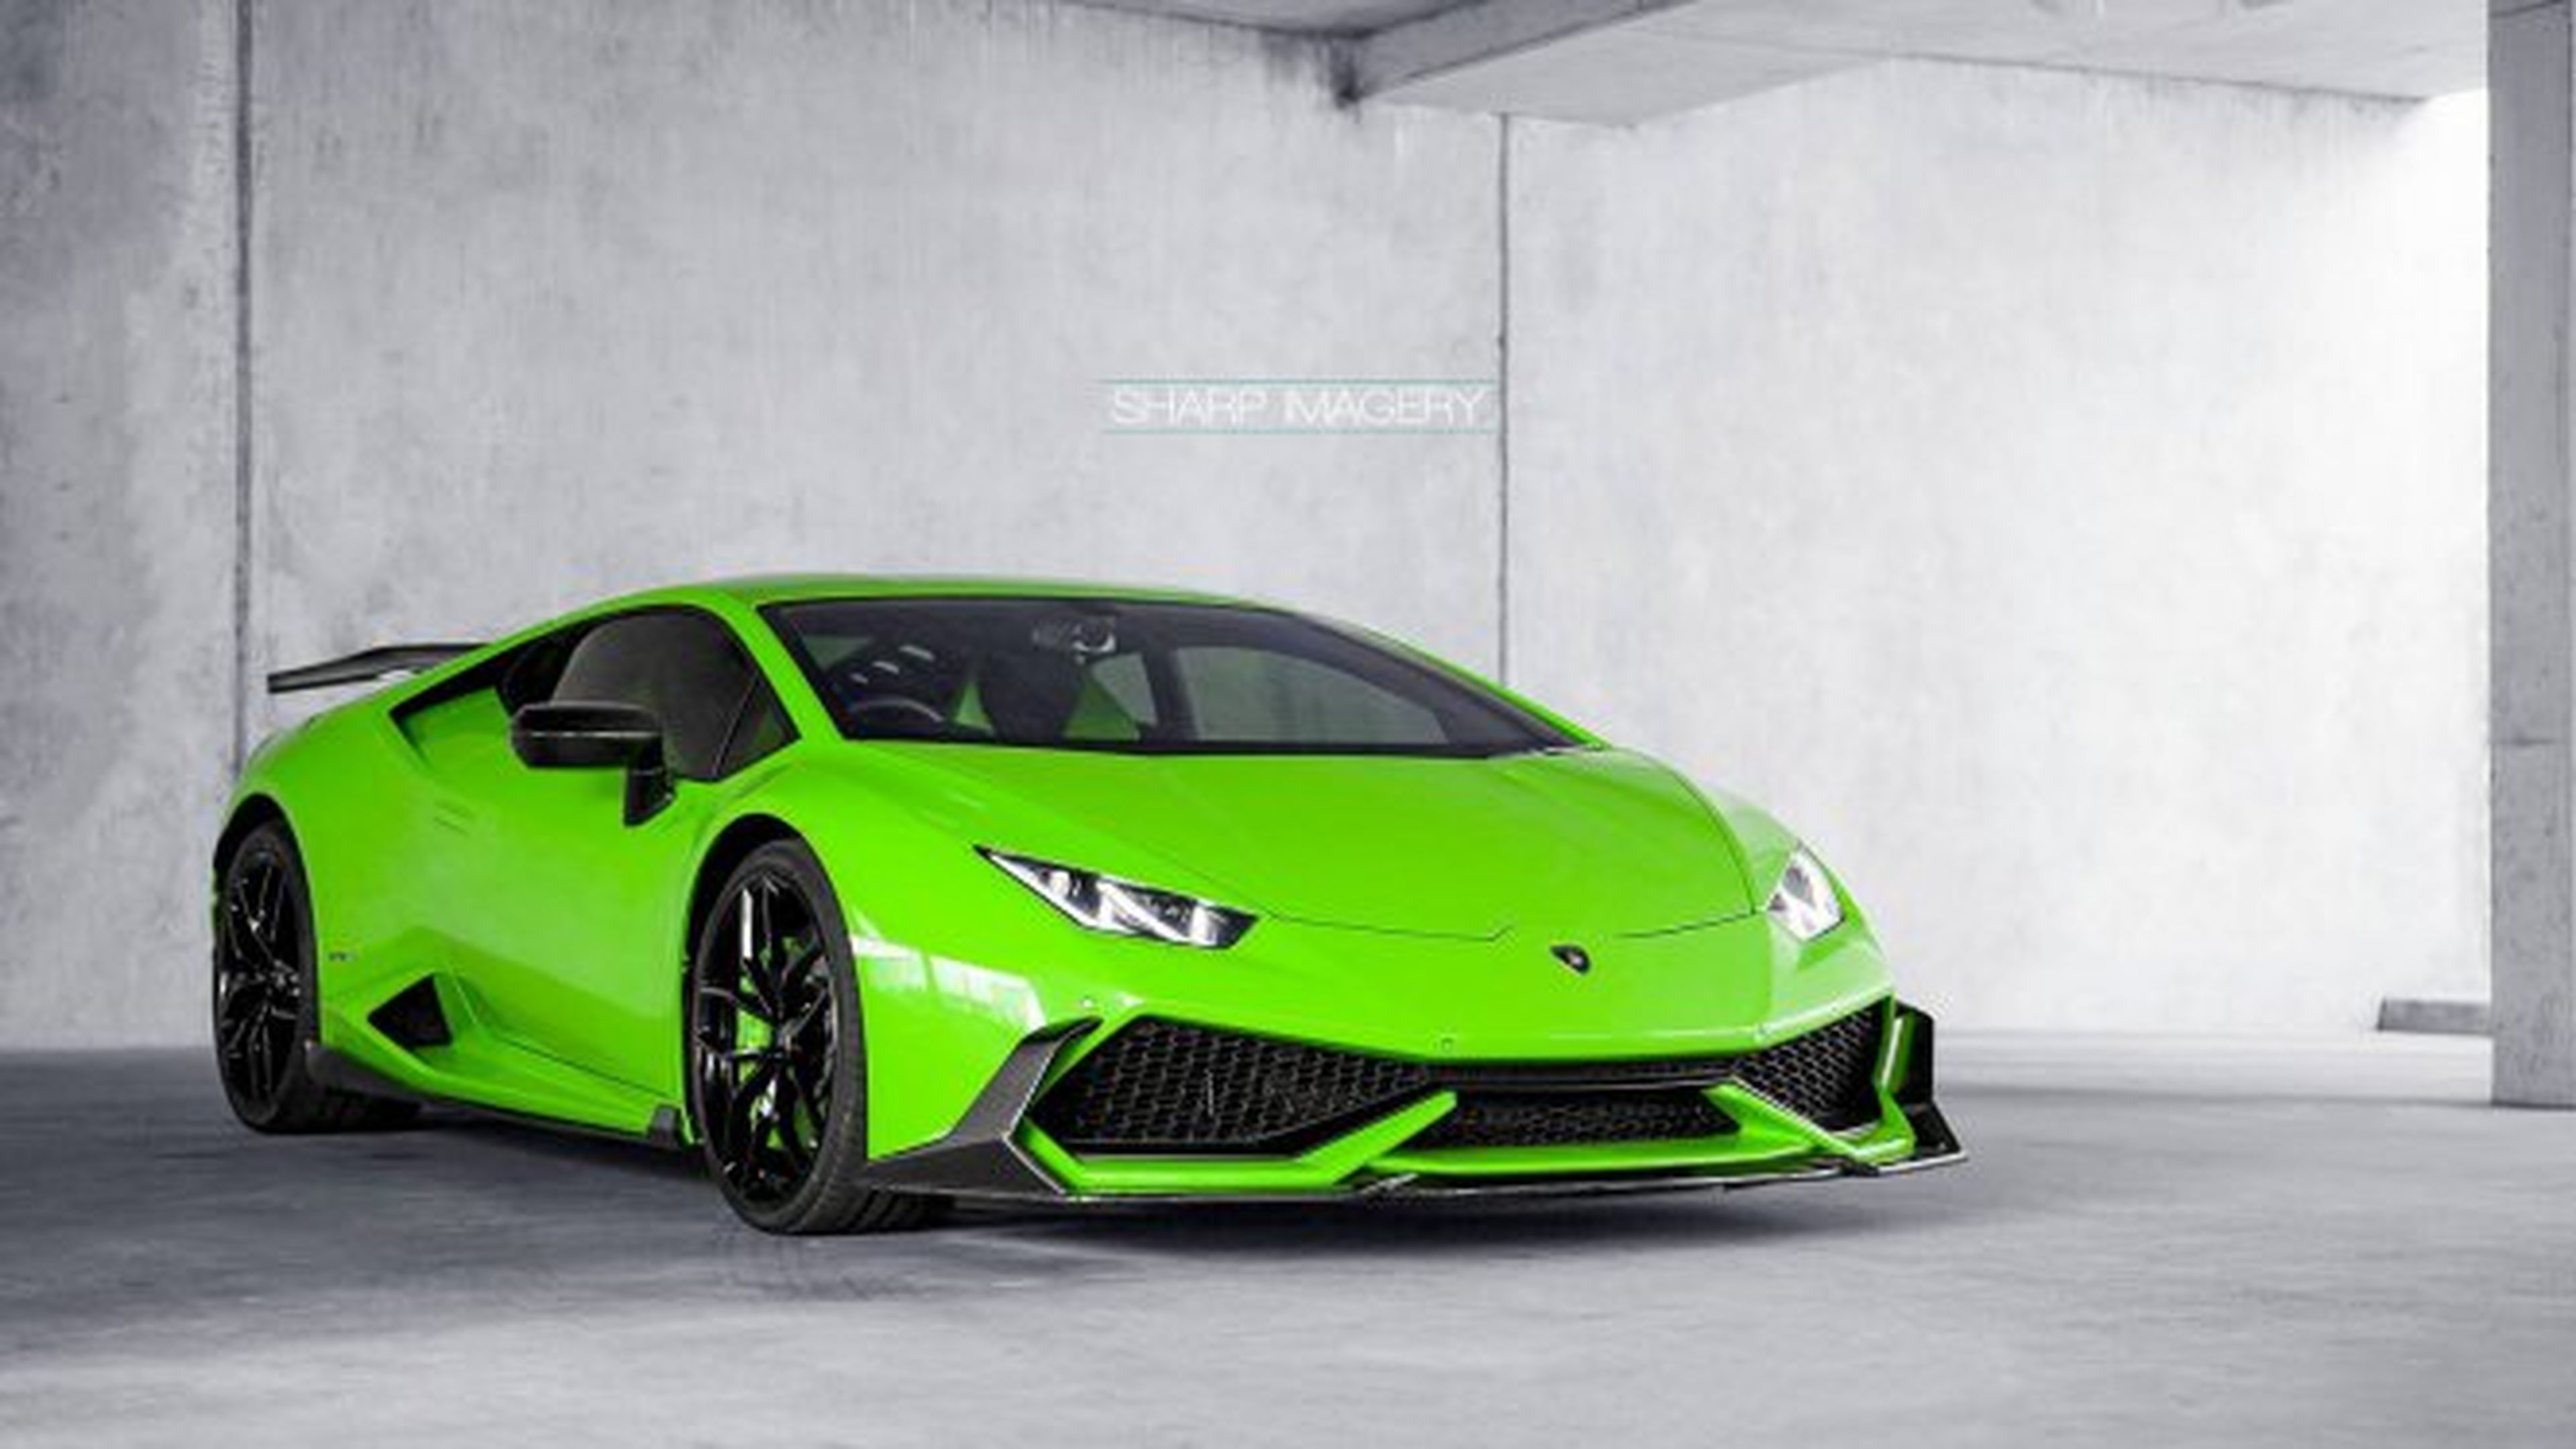 ¿Se pueden meter palos de golf en un Lamborghini?